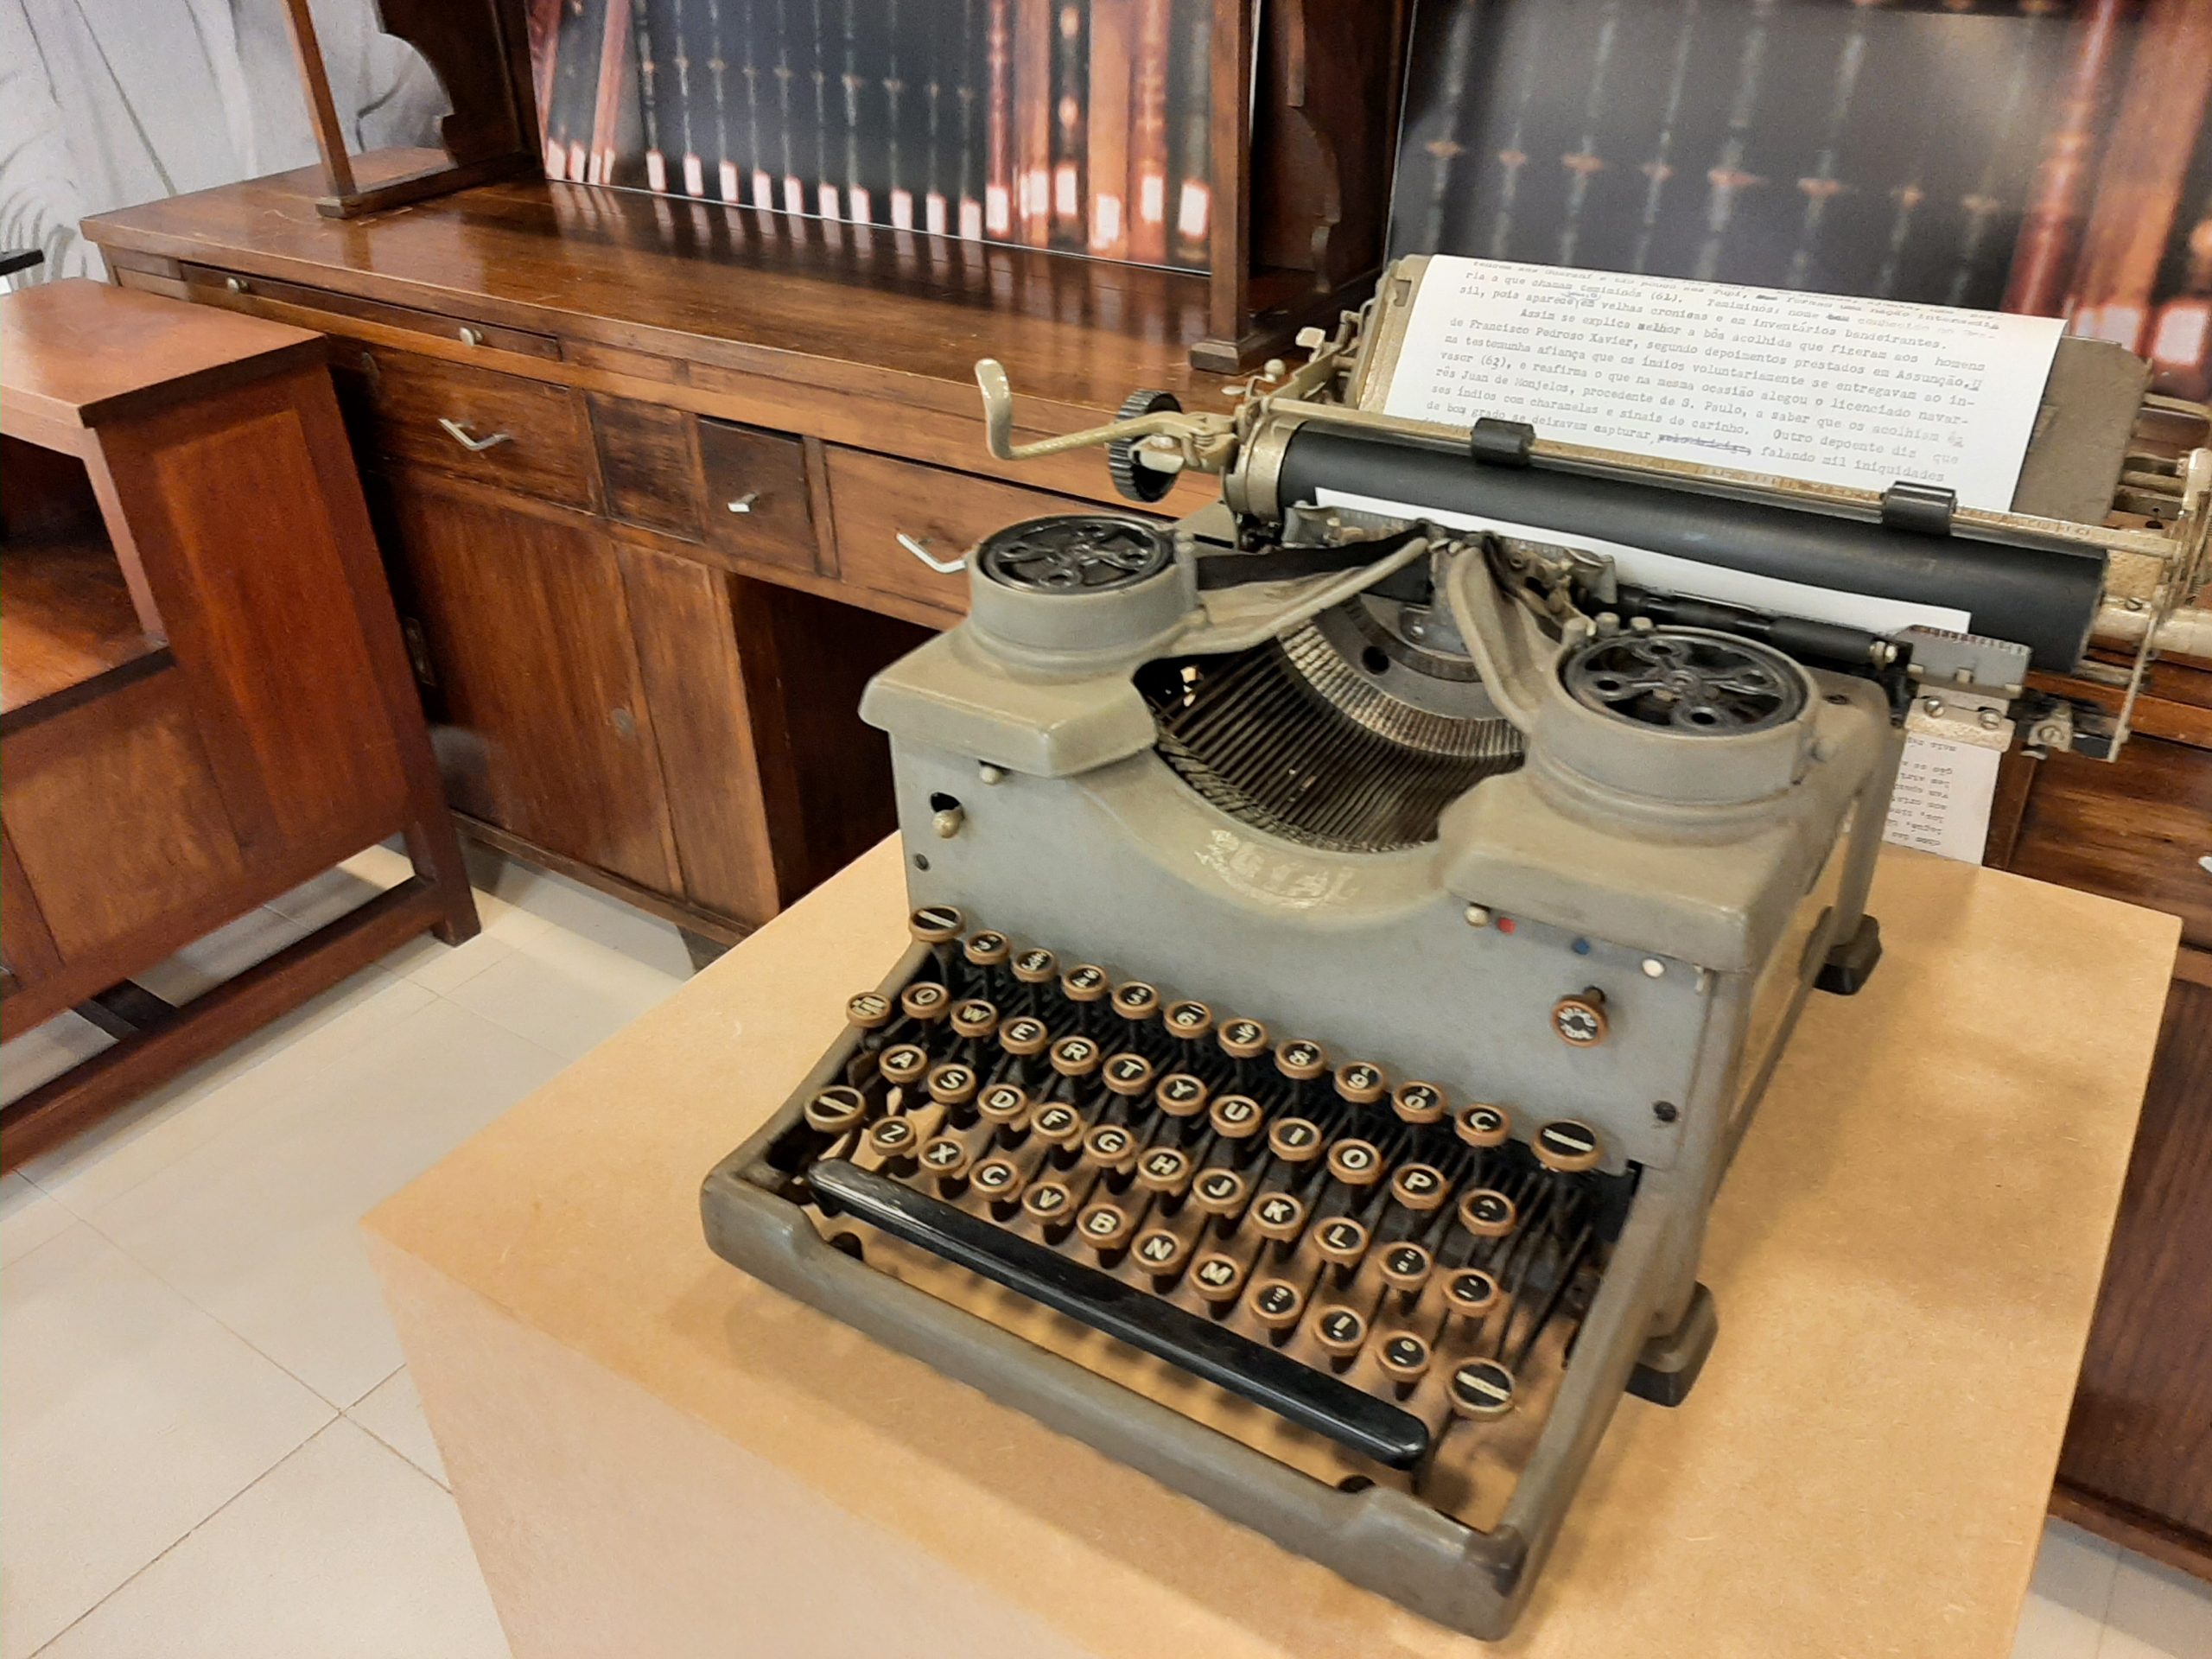 Máquina de escrever que pertenceu a Sérgio Buarque - Foto: Luiz Prado/USP Imagens